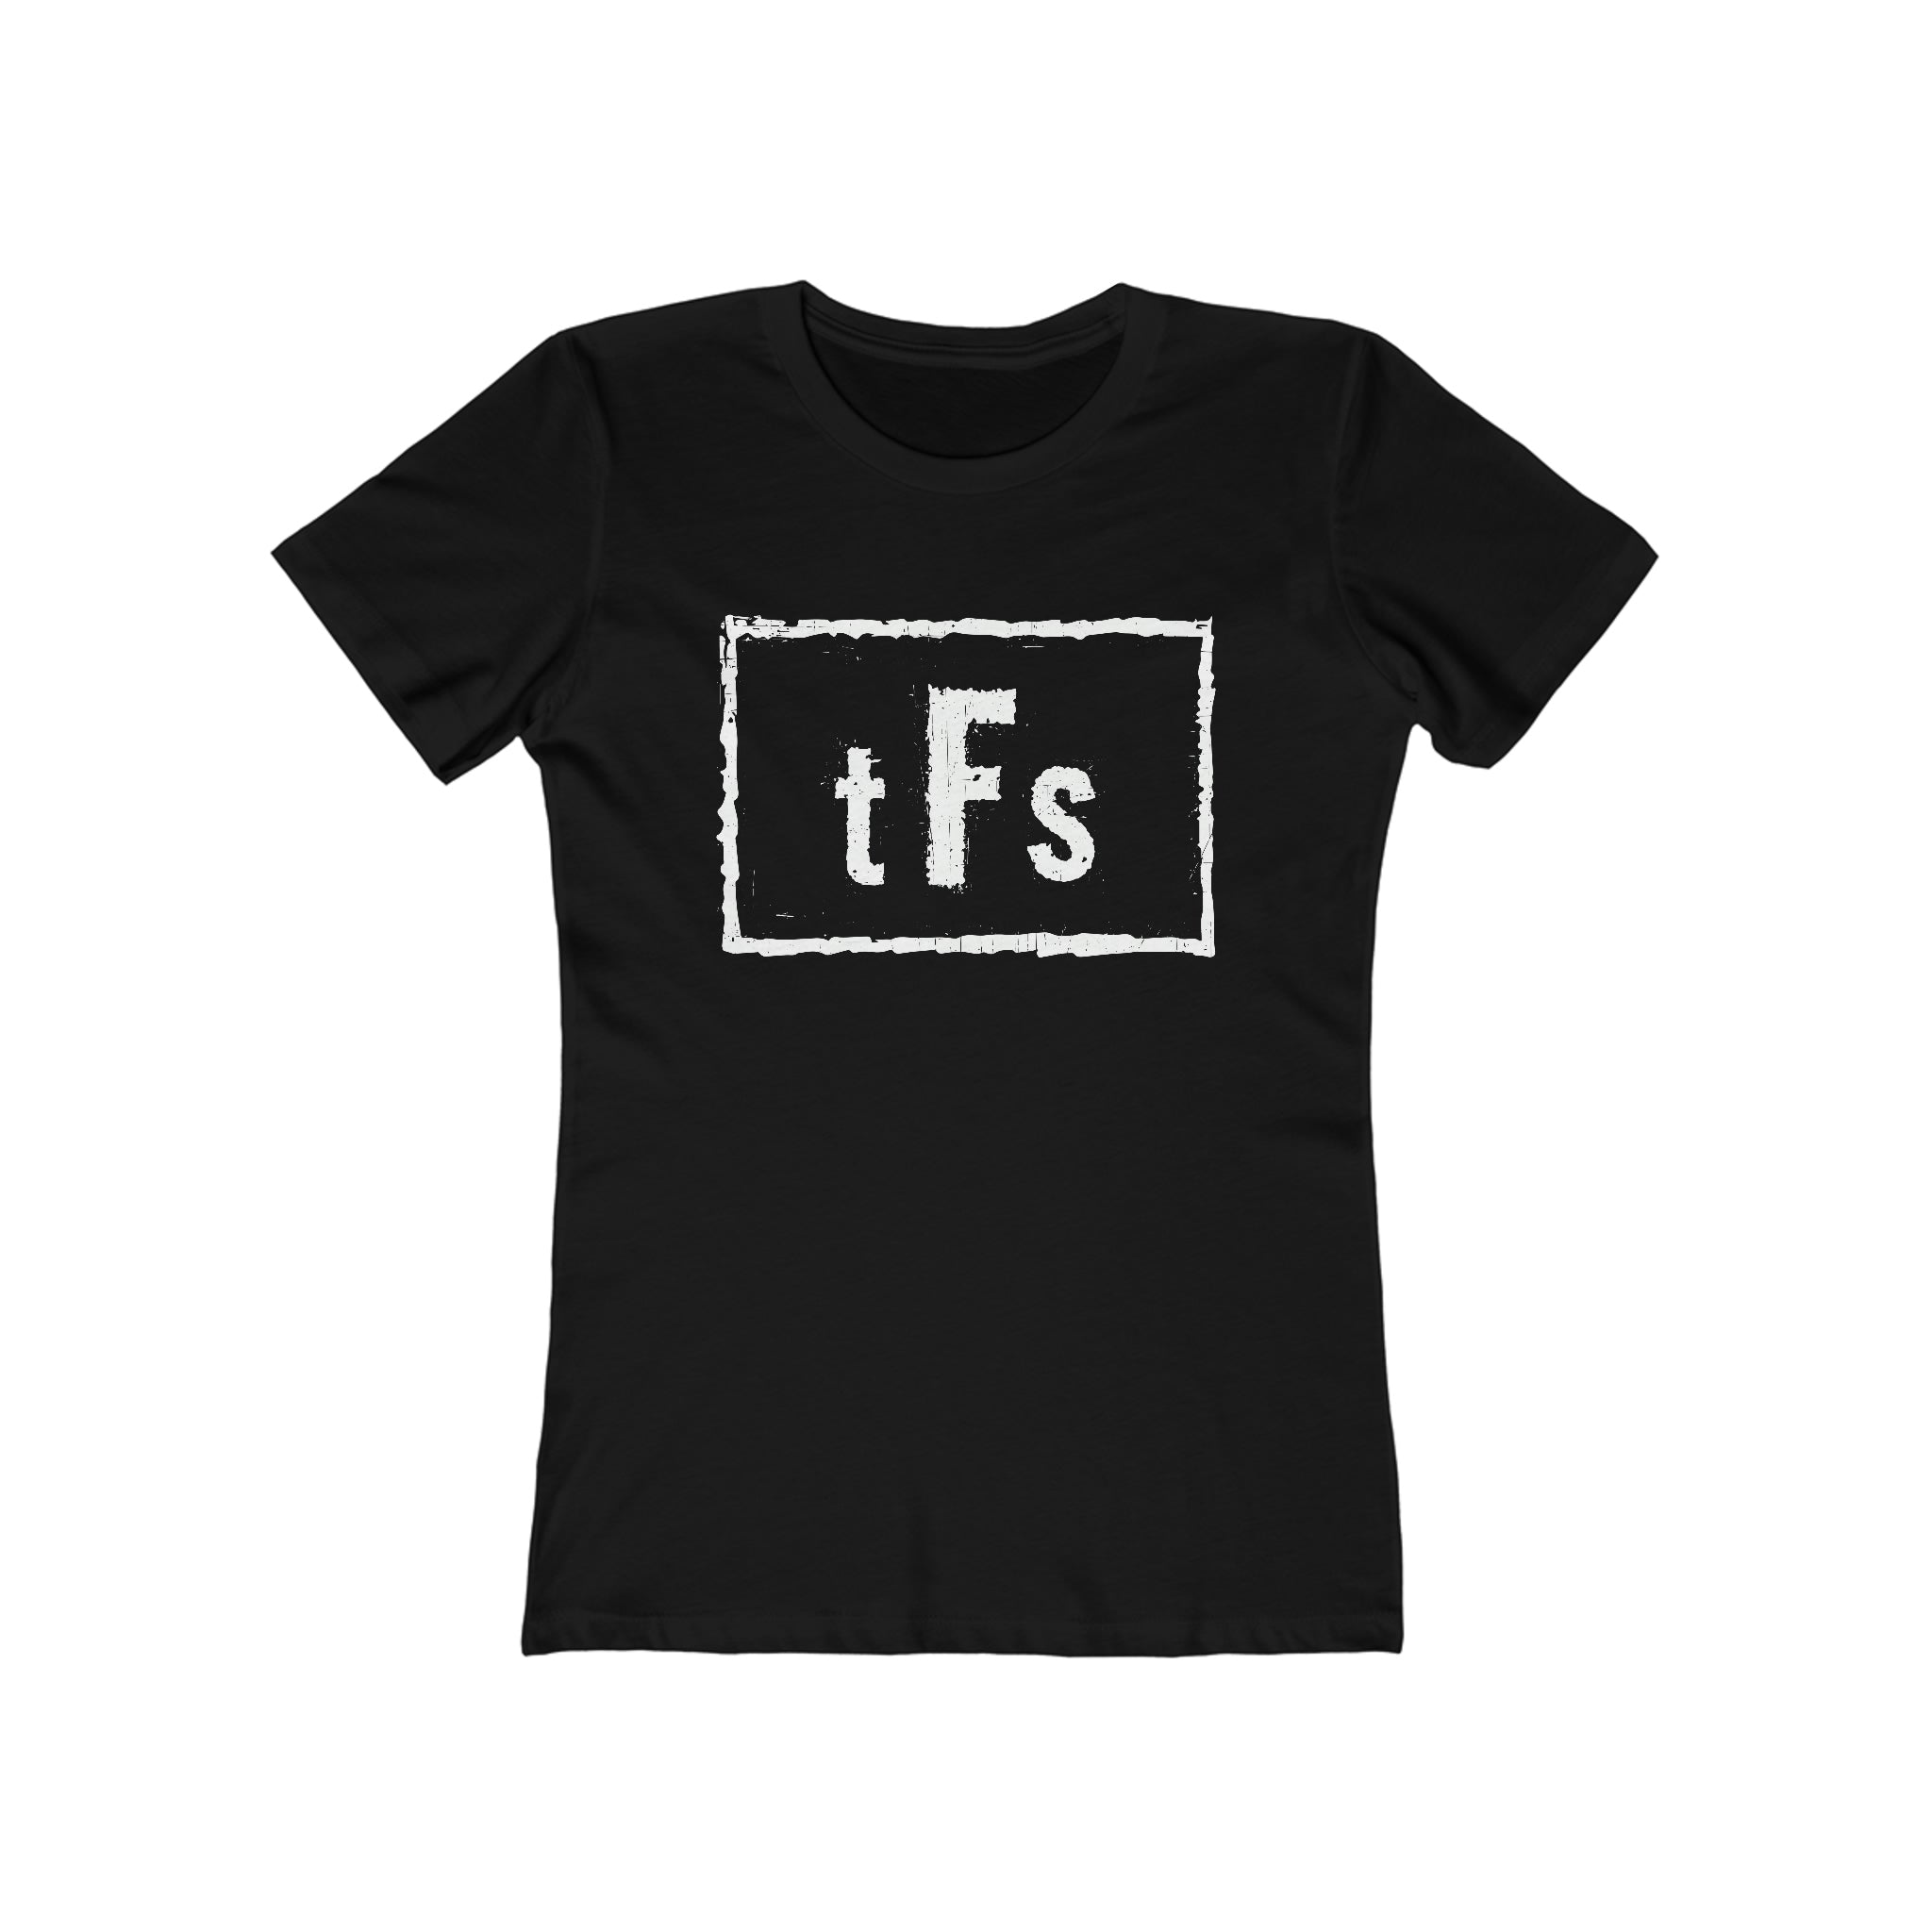 tFs Women's Shirt (Fed Soc)